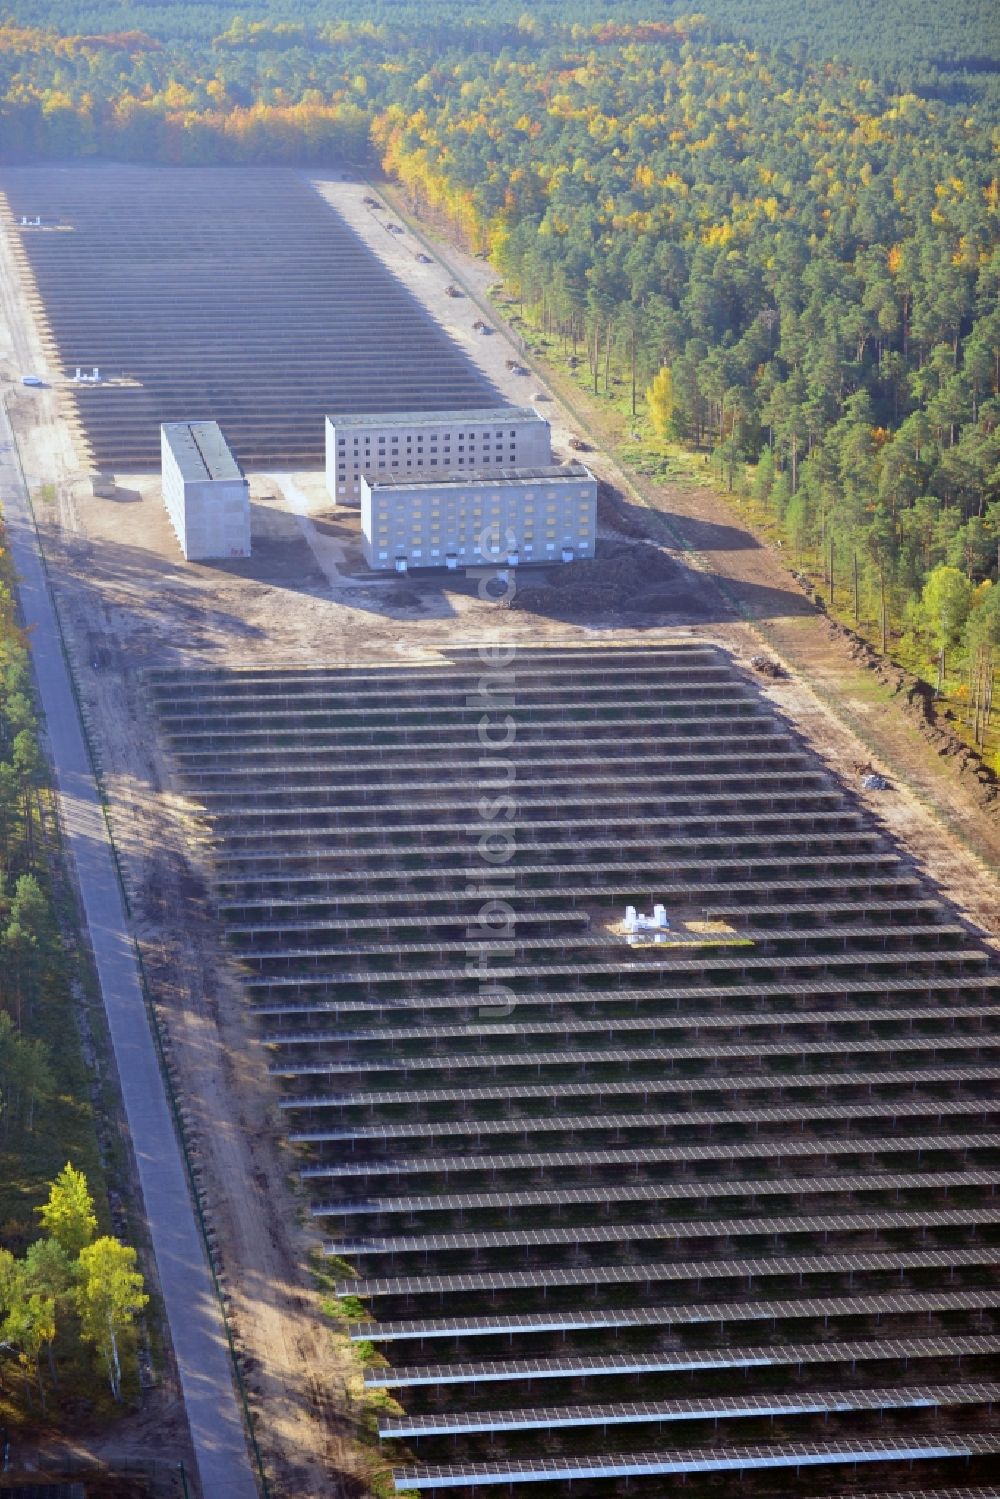 Templin von oben - Solarkraftwerk Templin - Groß Dölln auf dem ehmaligen Flugplatz Templin im Bundesland Brandenburg